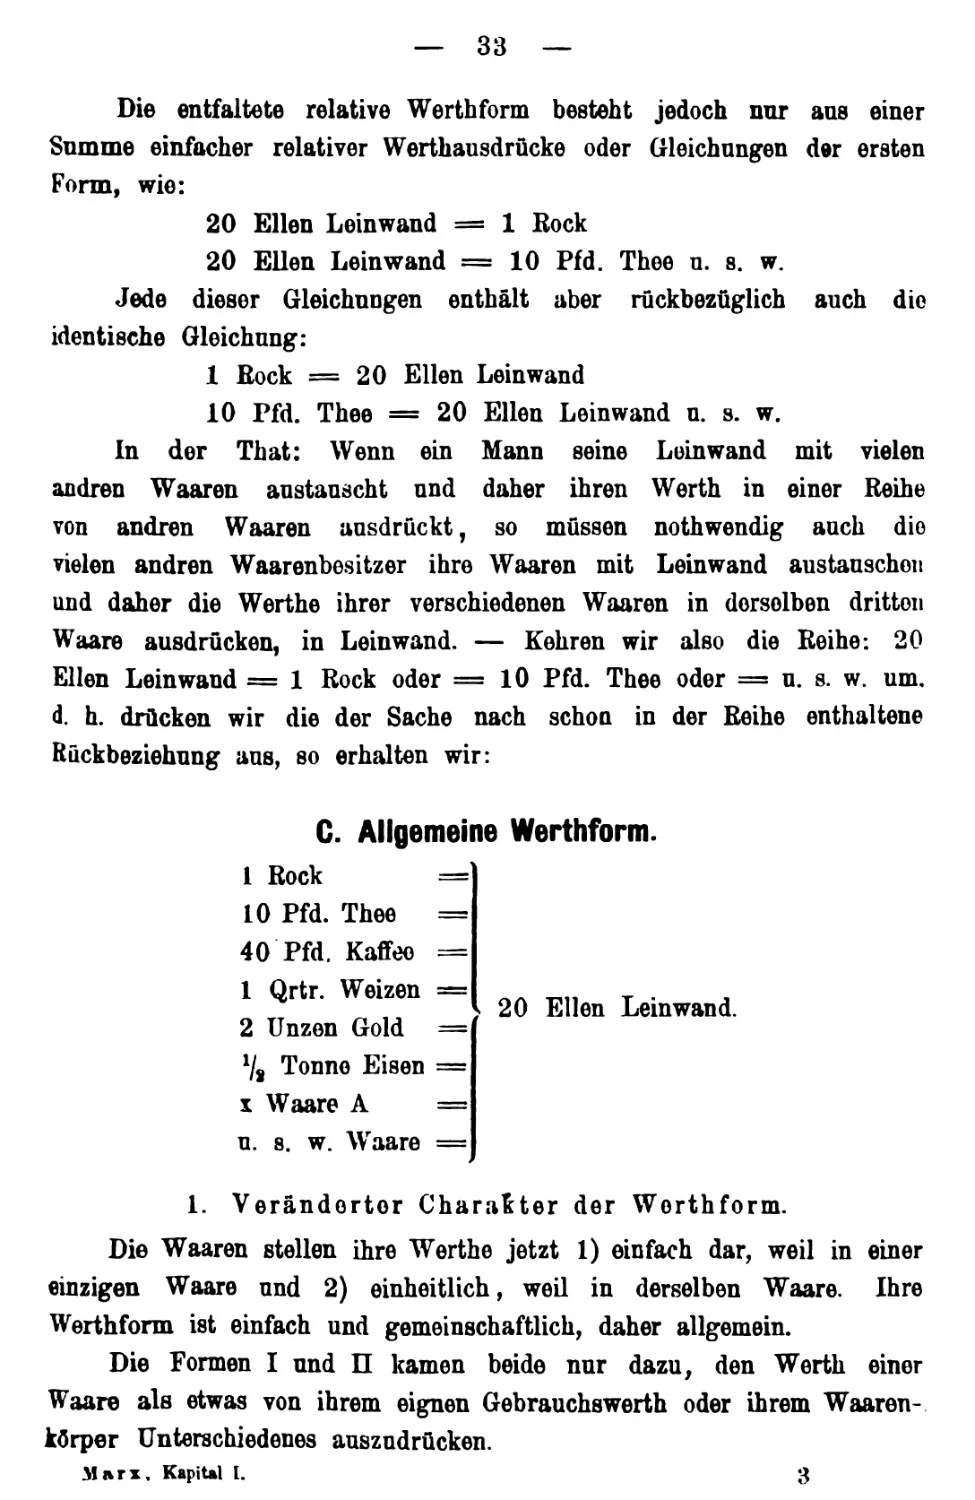 C. Allgemeine Wertform